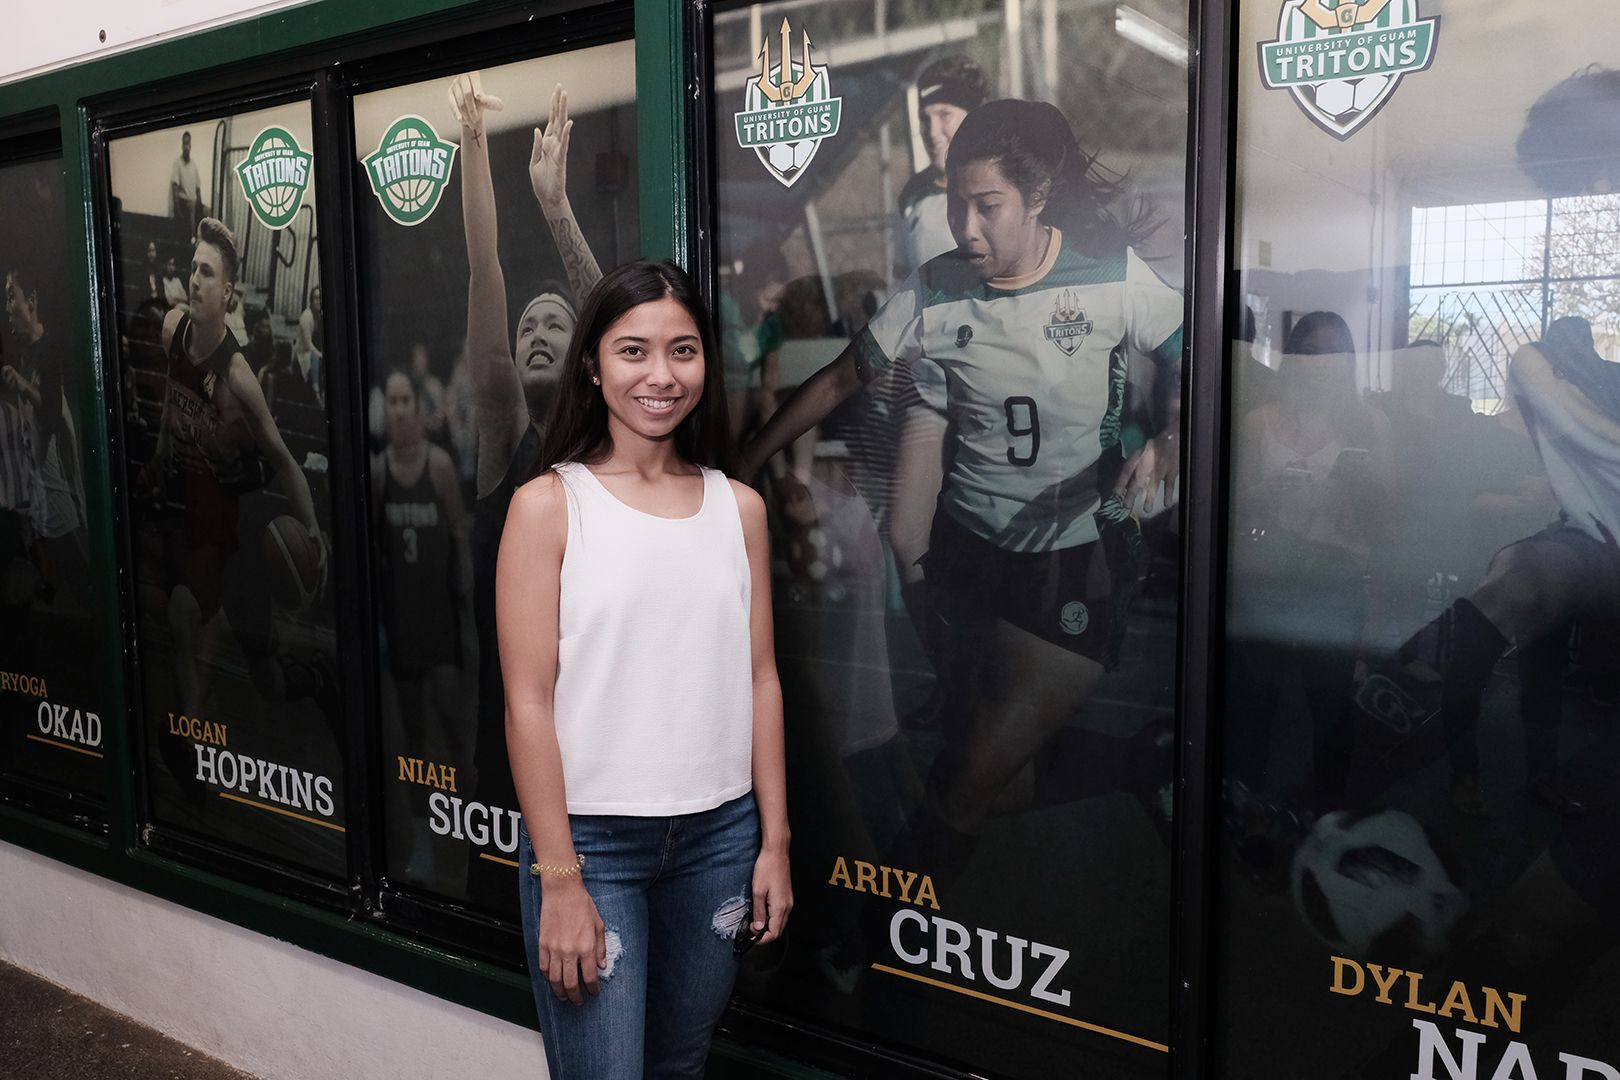 Triton Women’s Soccer player Ariya Cruz